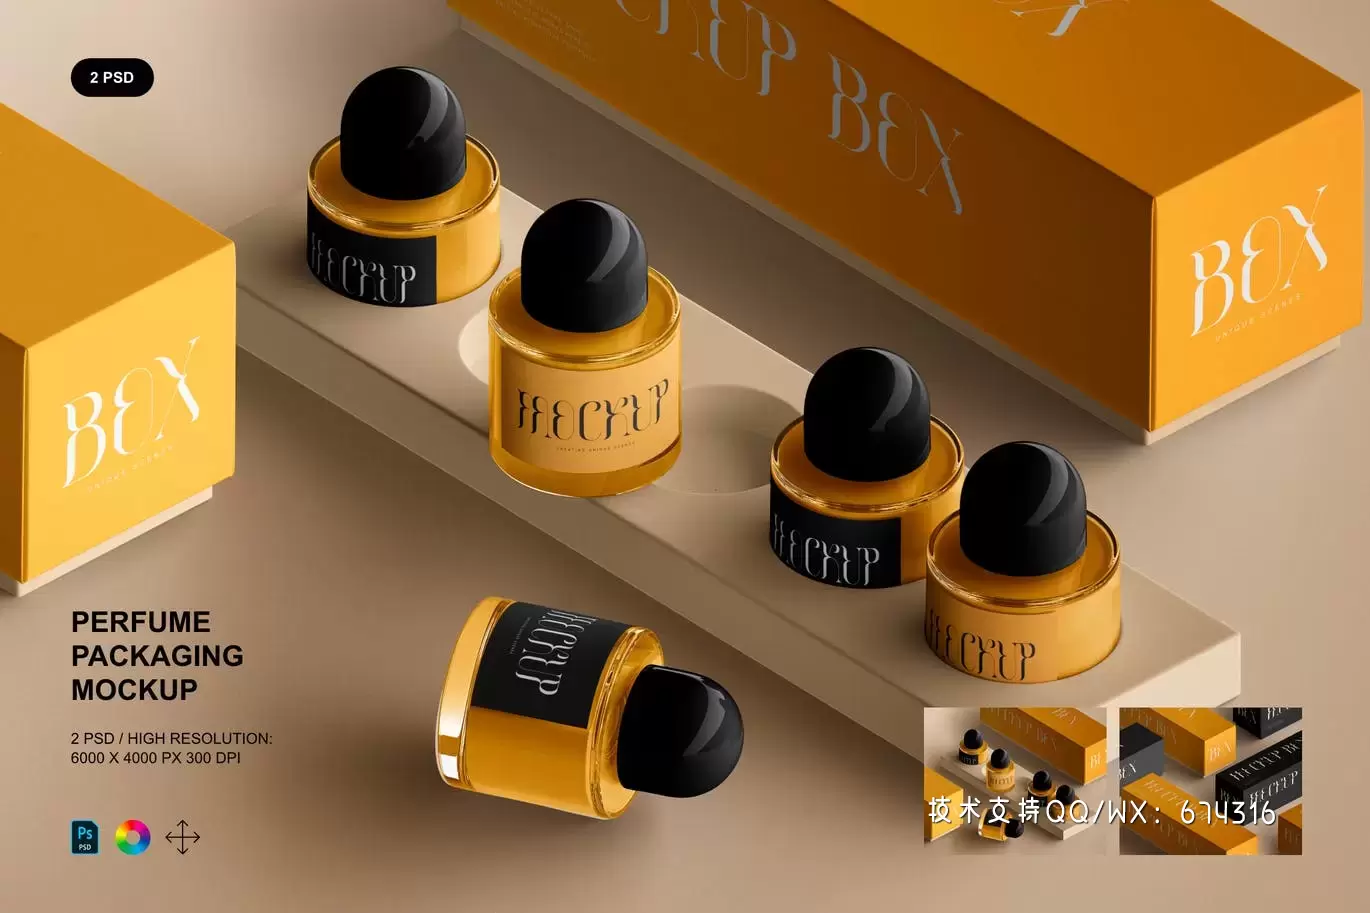 时尚高端专业的高品质香水包装设计VI样机展示模型mockups免费下载